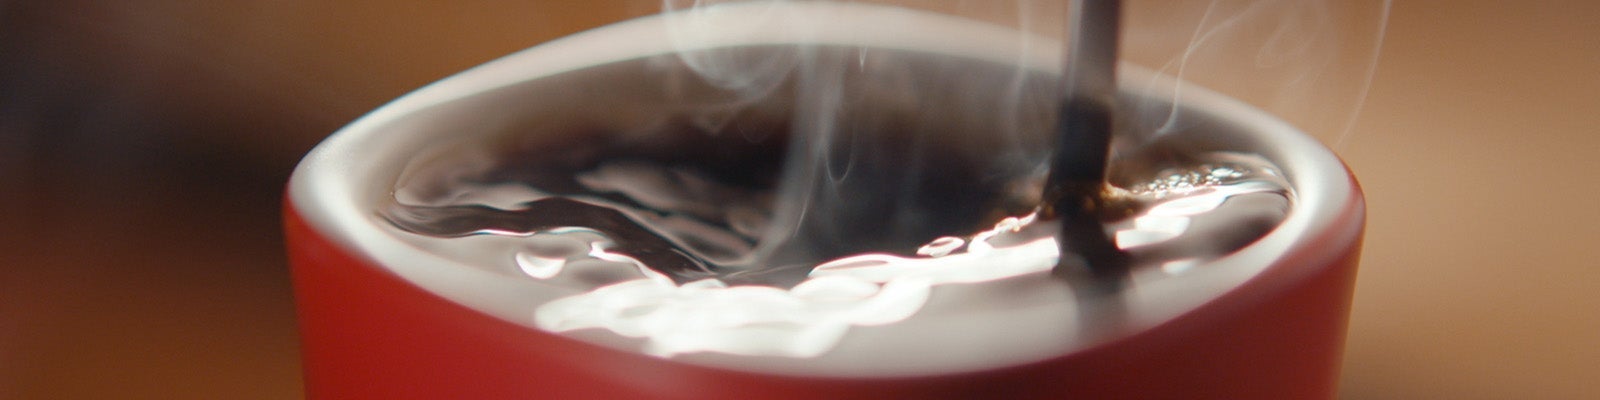 طريقة تحضير قهوة سريعة الذوبان في المنزل